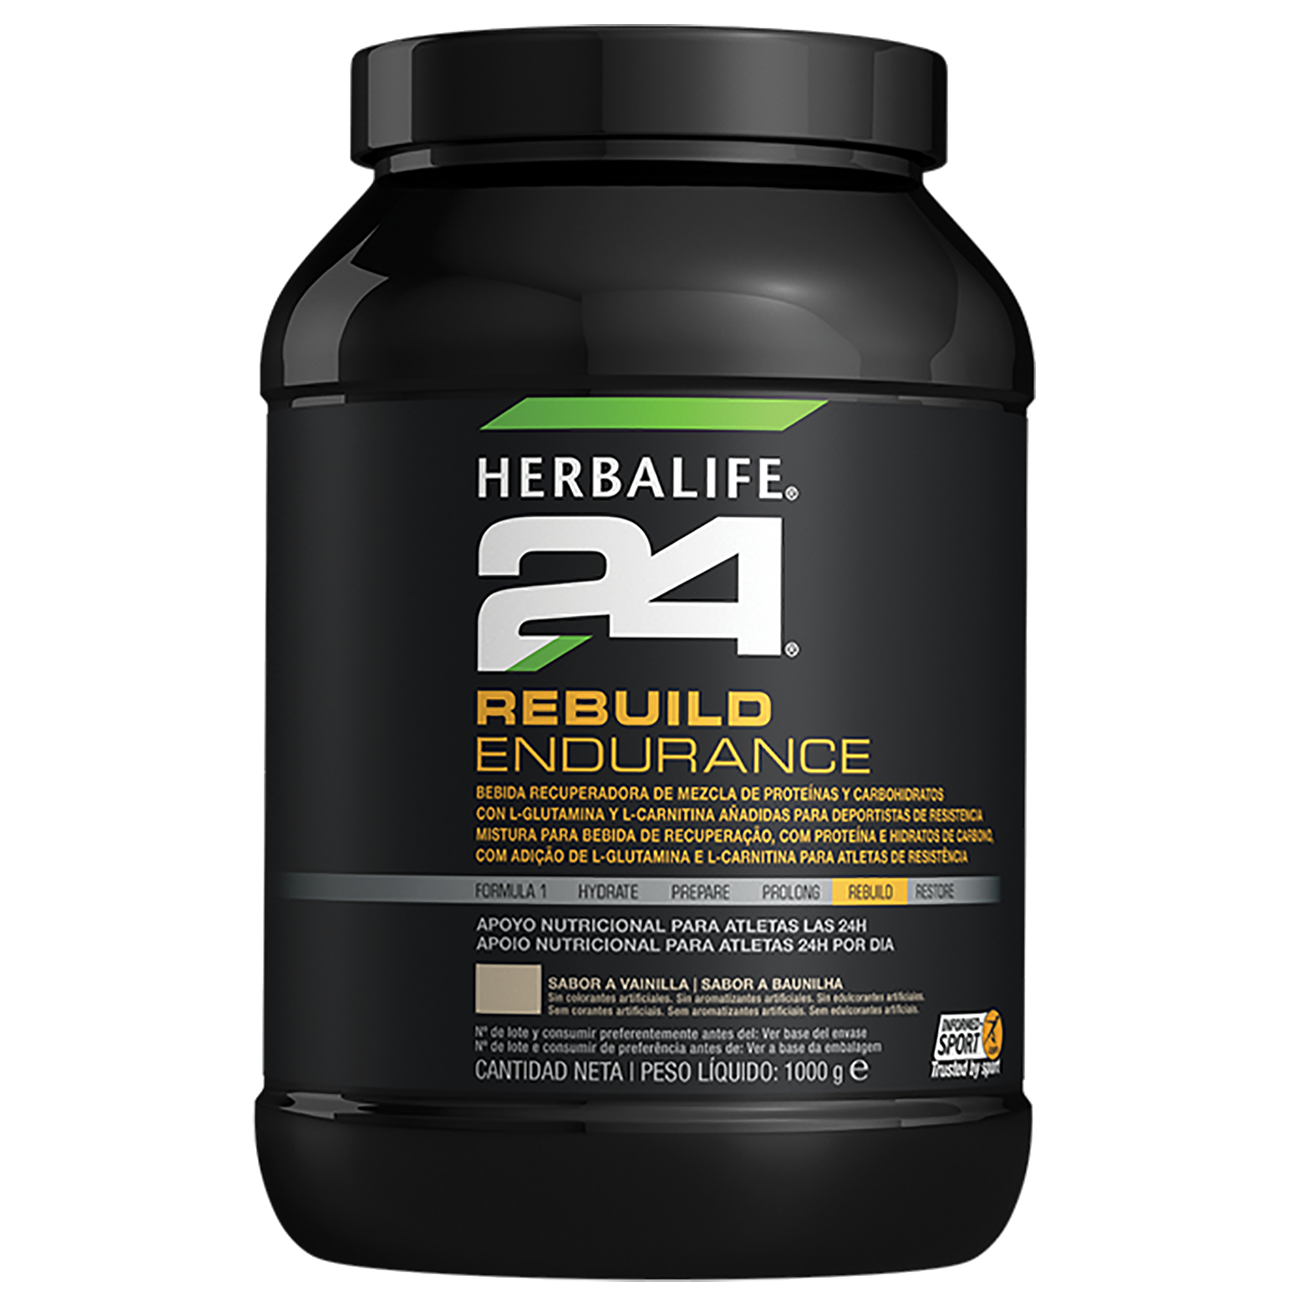 Herbalife 24 Rebuild Endurance Nutrição Desportiva Baunilha product shot